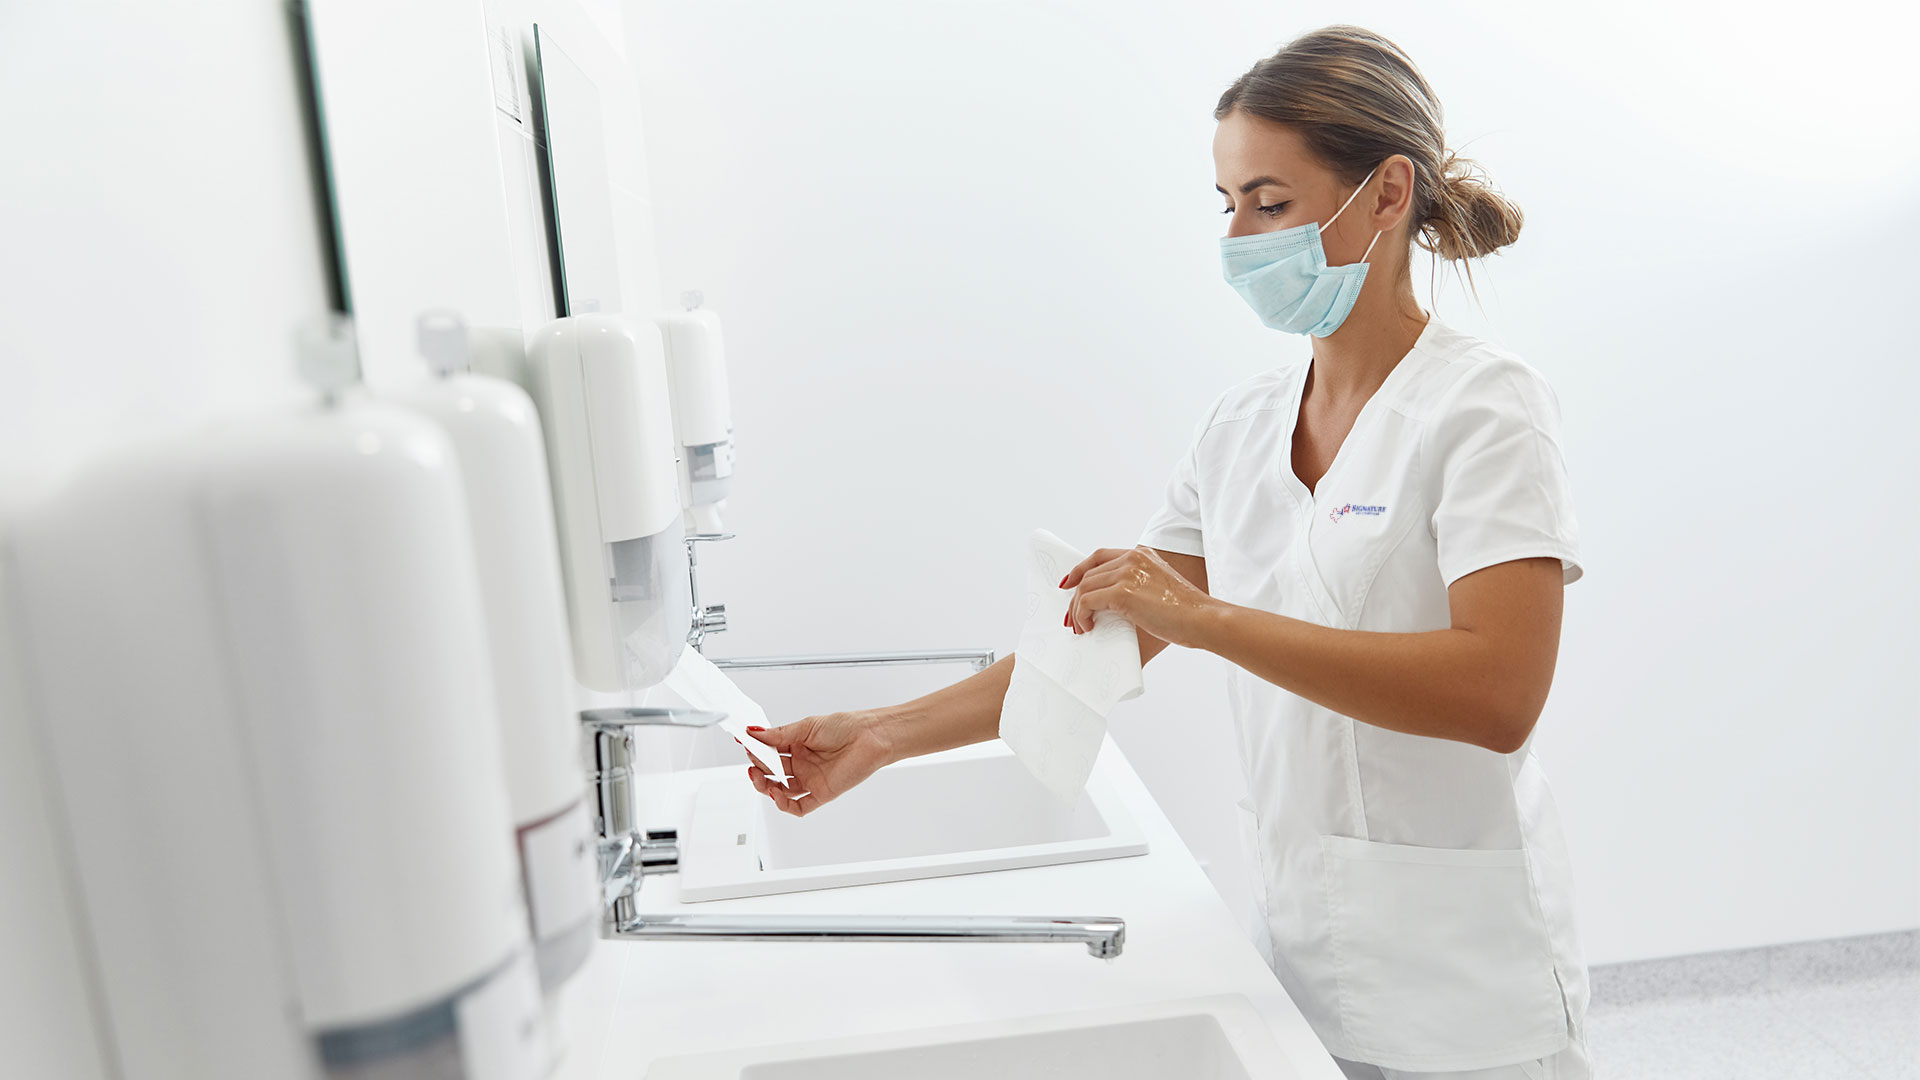 Nurse drying her hands